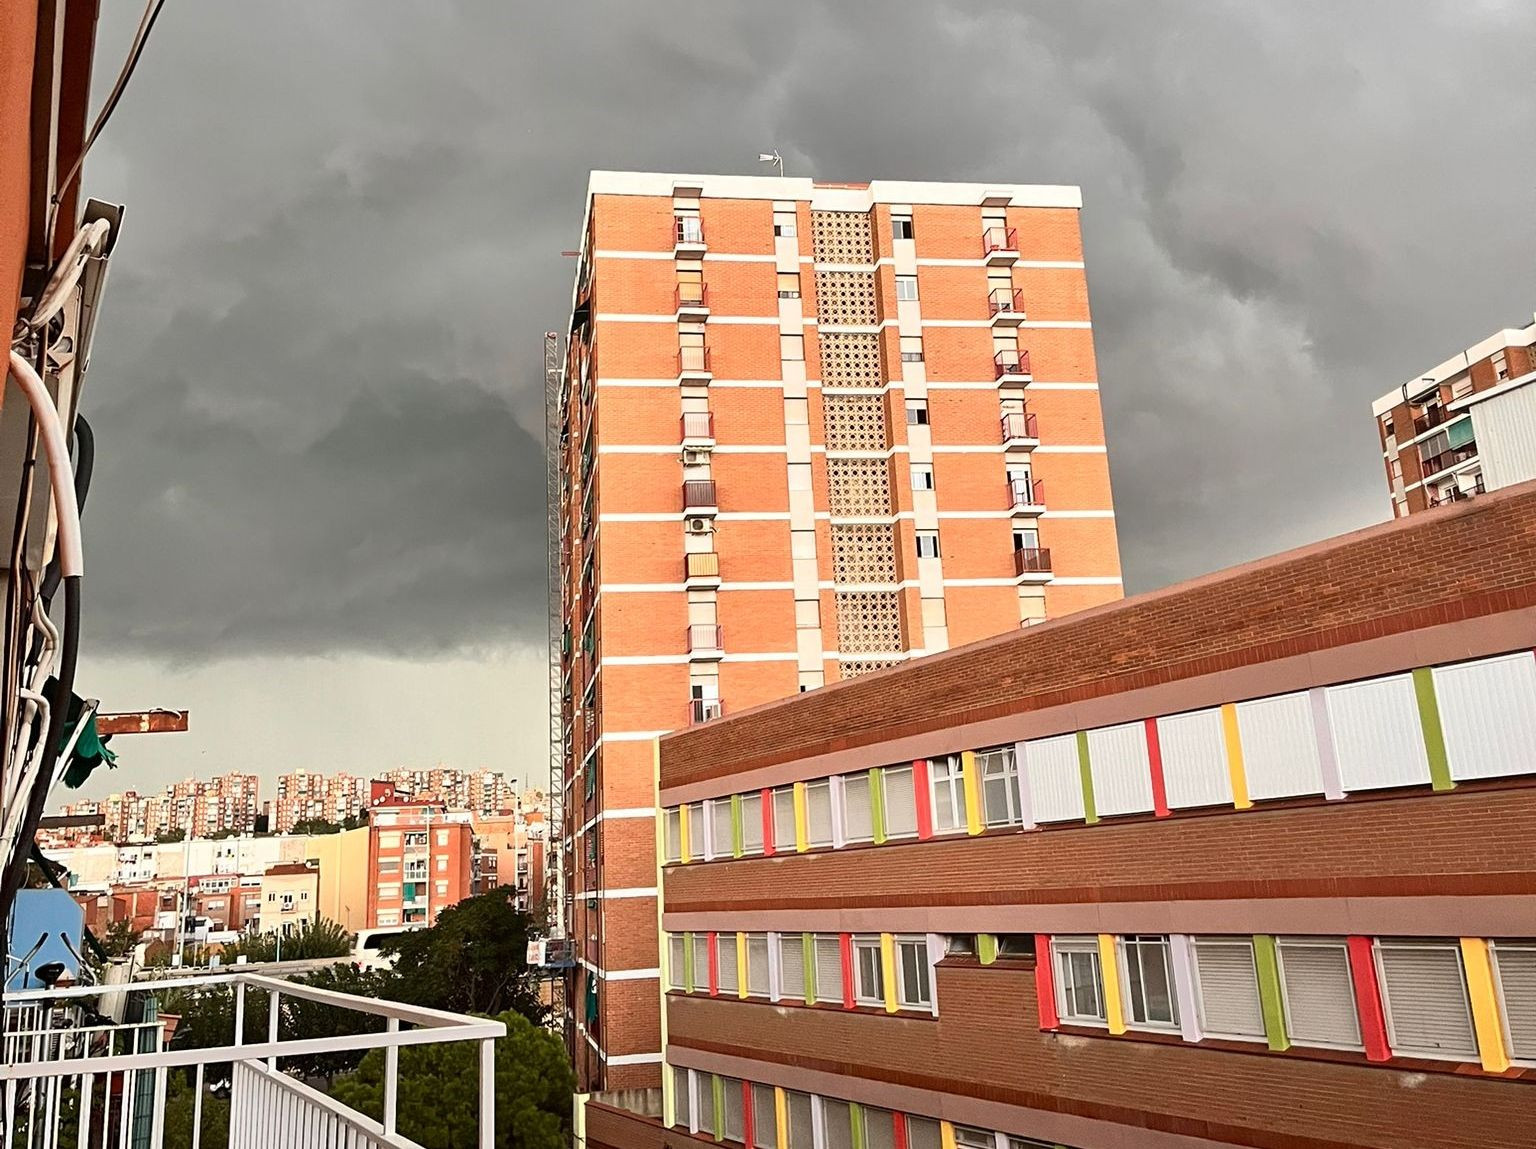 Imagen de la tormenta antes de la tromba de agua desde un edificio de viviendas del barrio de Sant Roc de Badalona / METRÓPOLI